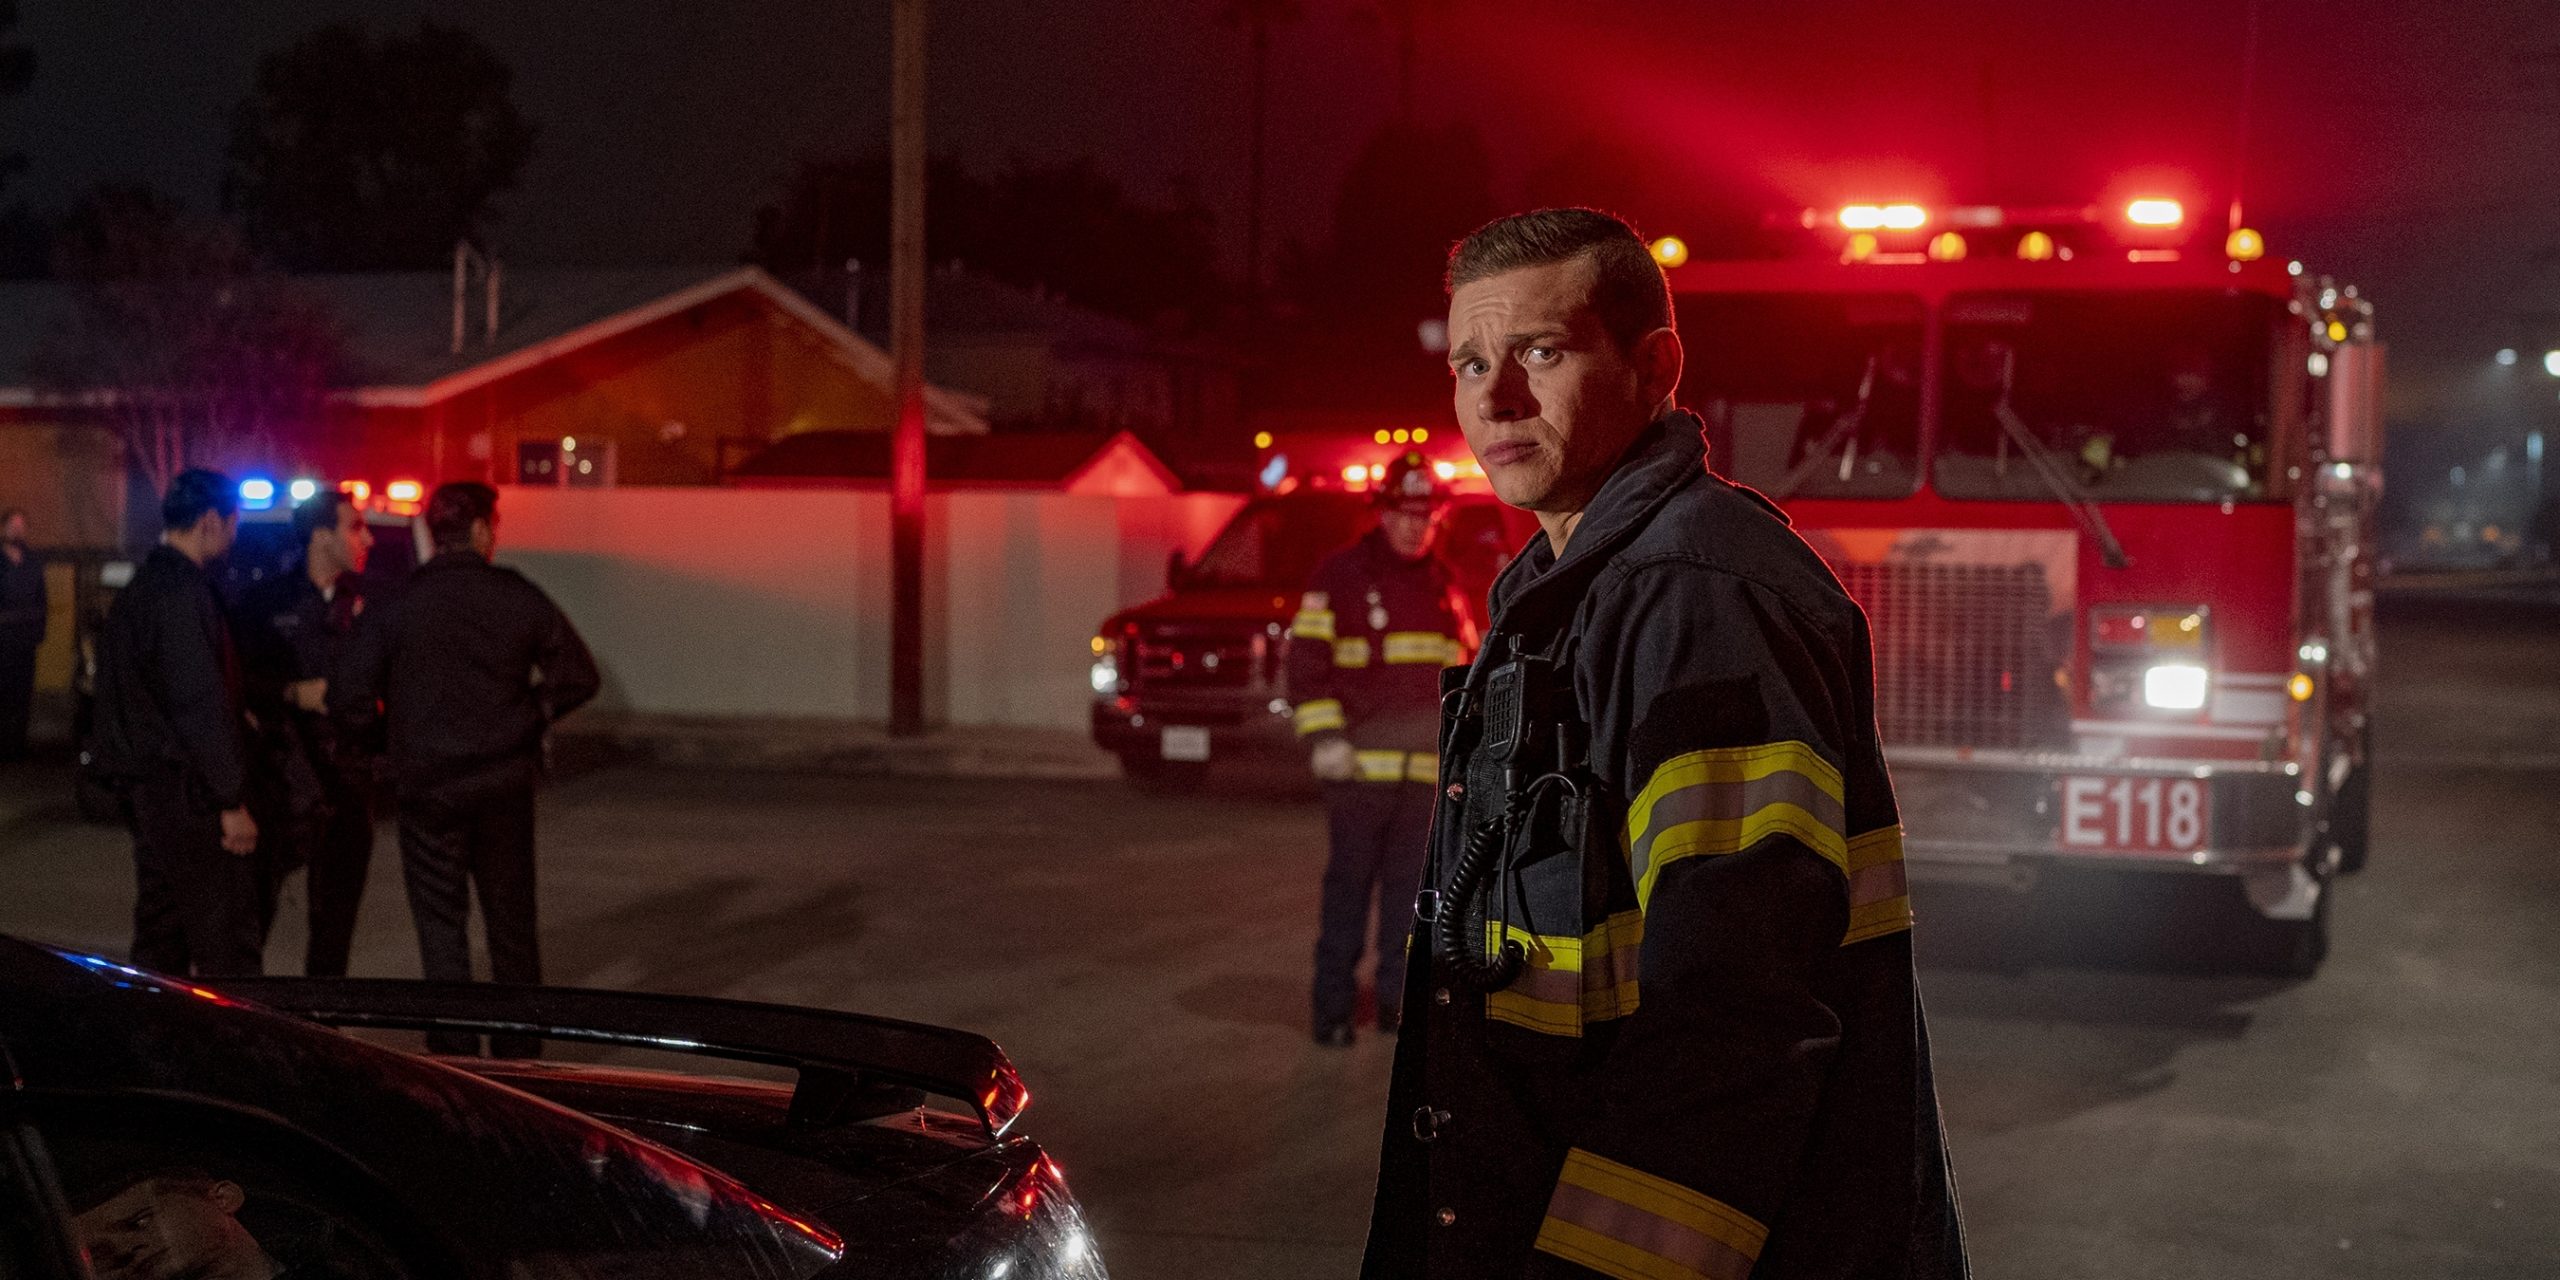 911 Season 3 Episode 14 Release Date Watch Online Spoilers